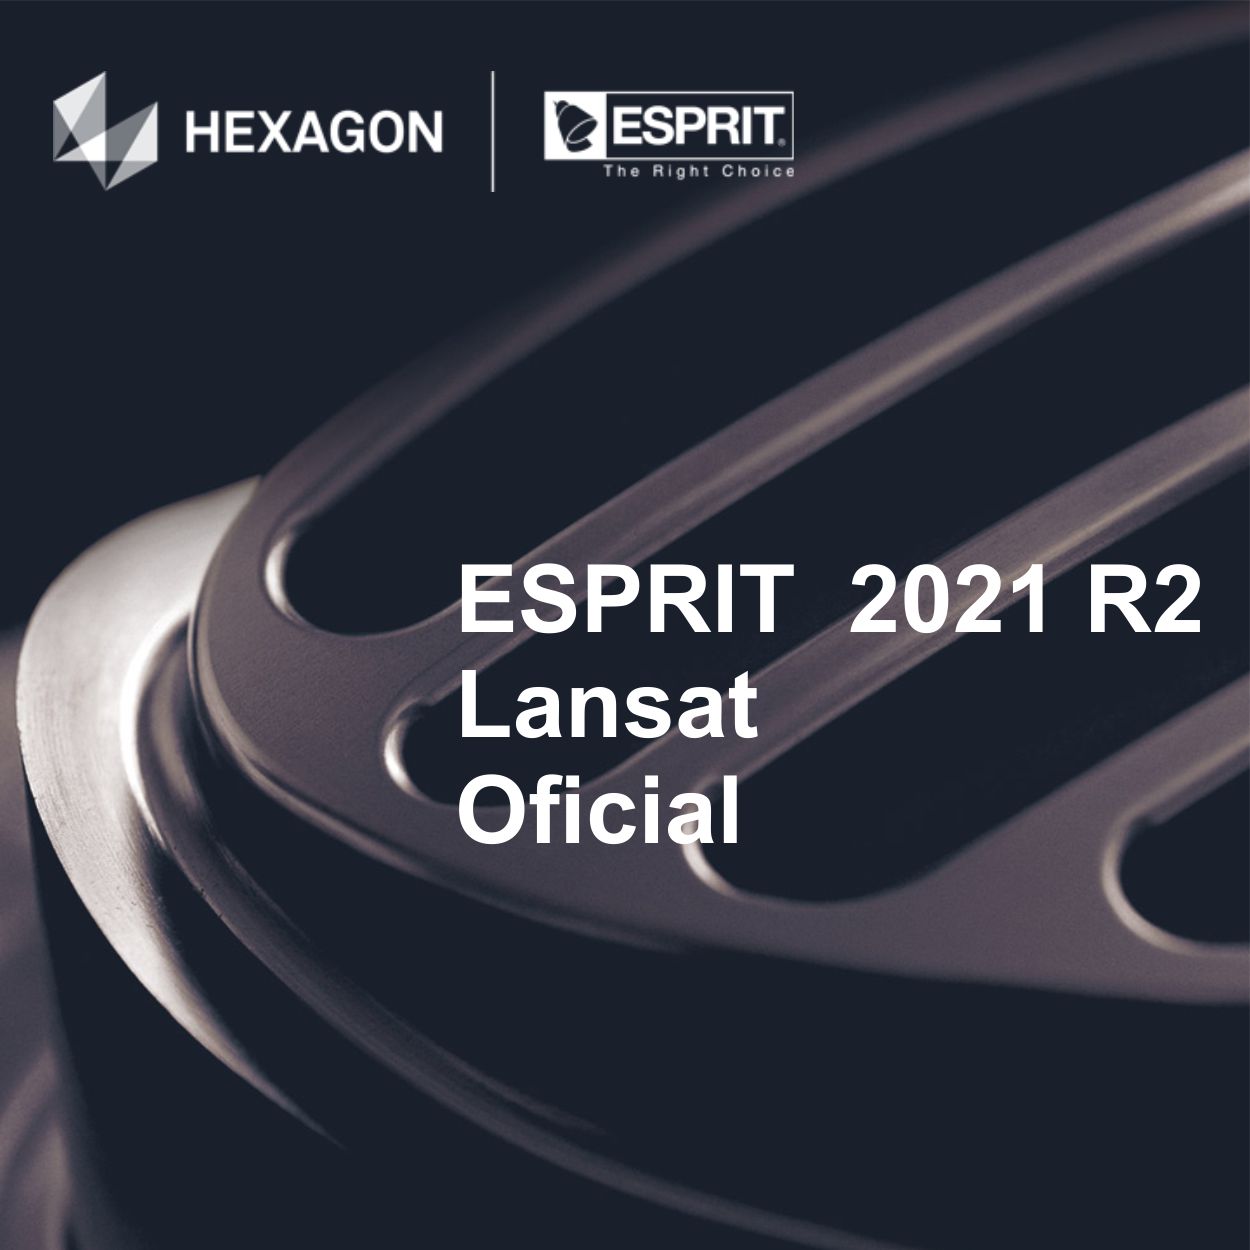 ESPRIT 2021 R2 - s-a lansat oficial